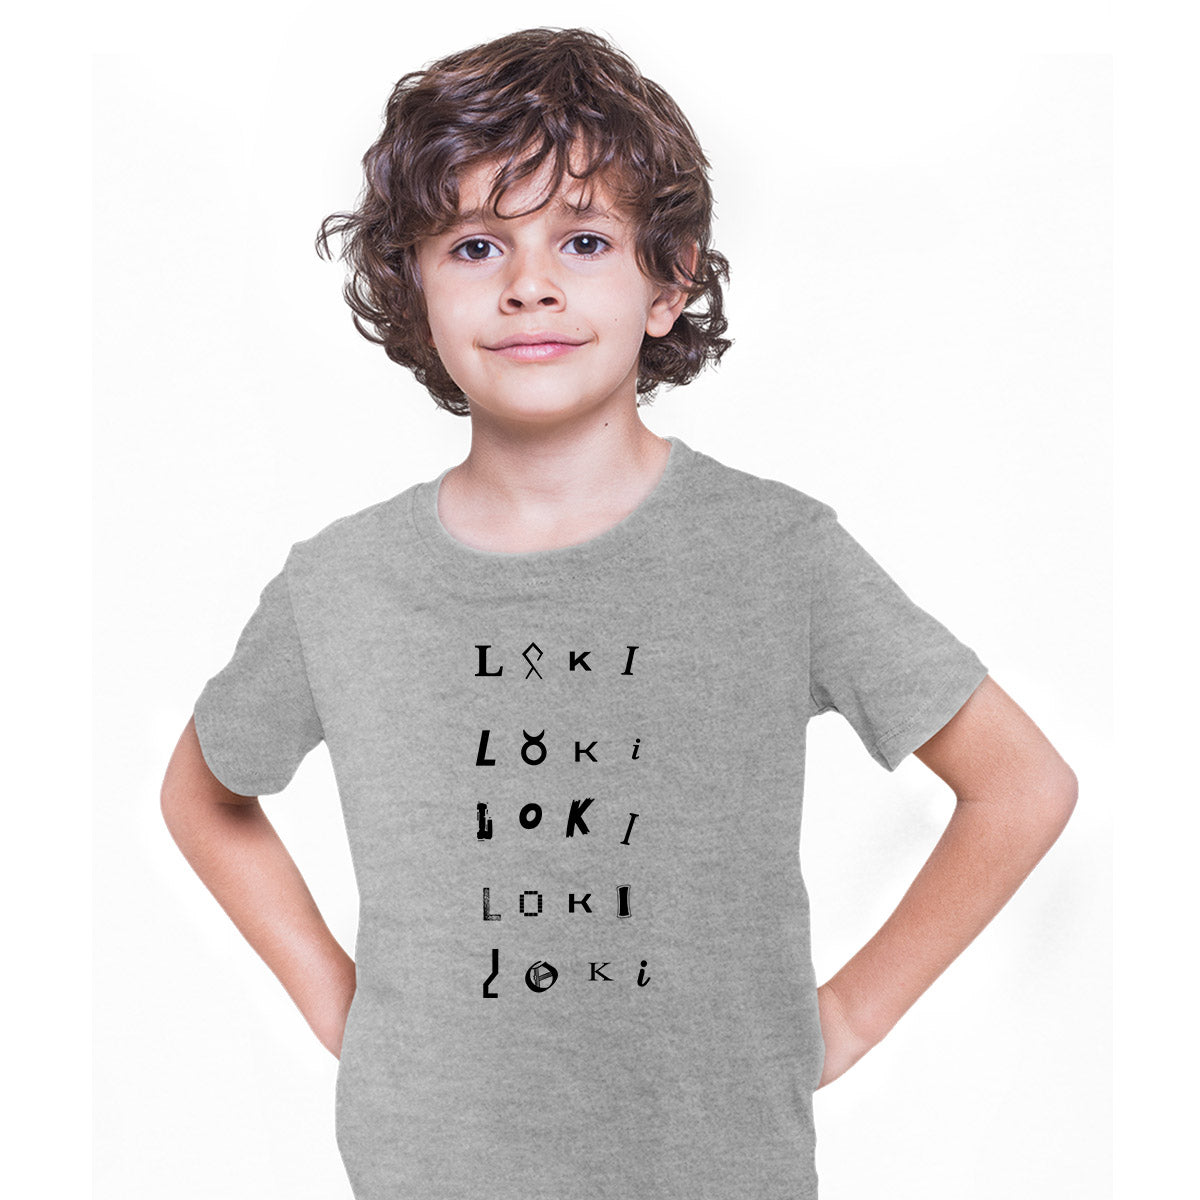 Loki TVA 2 Emblem Grey T-shirt Tom Hiddleston Sylvie for Kids